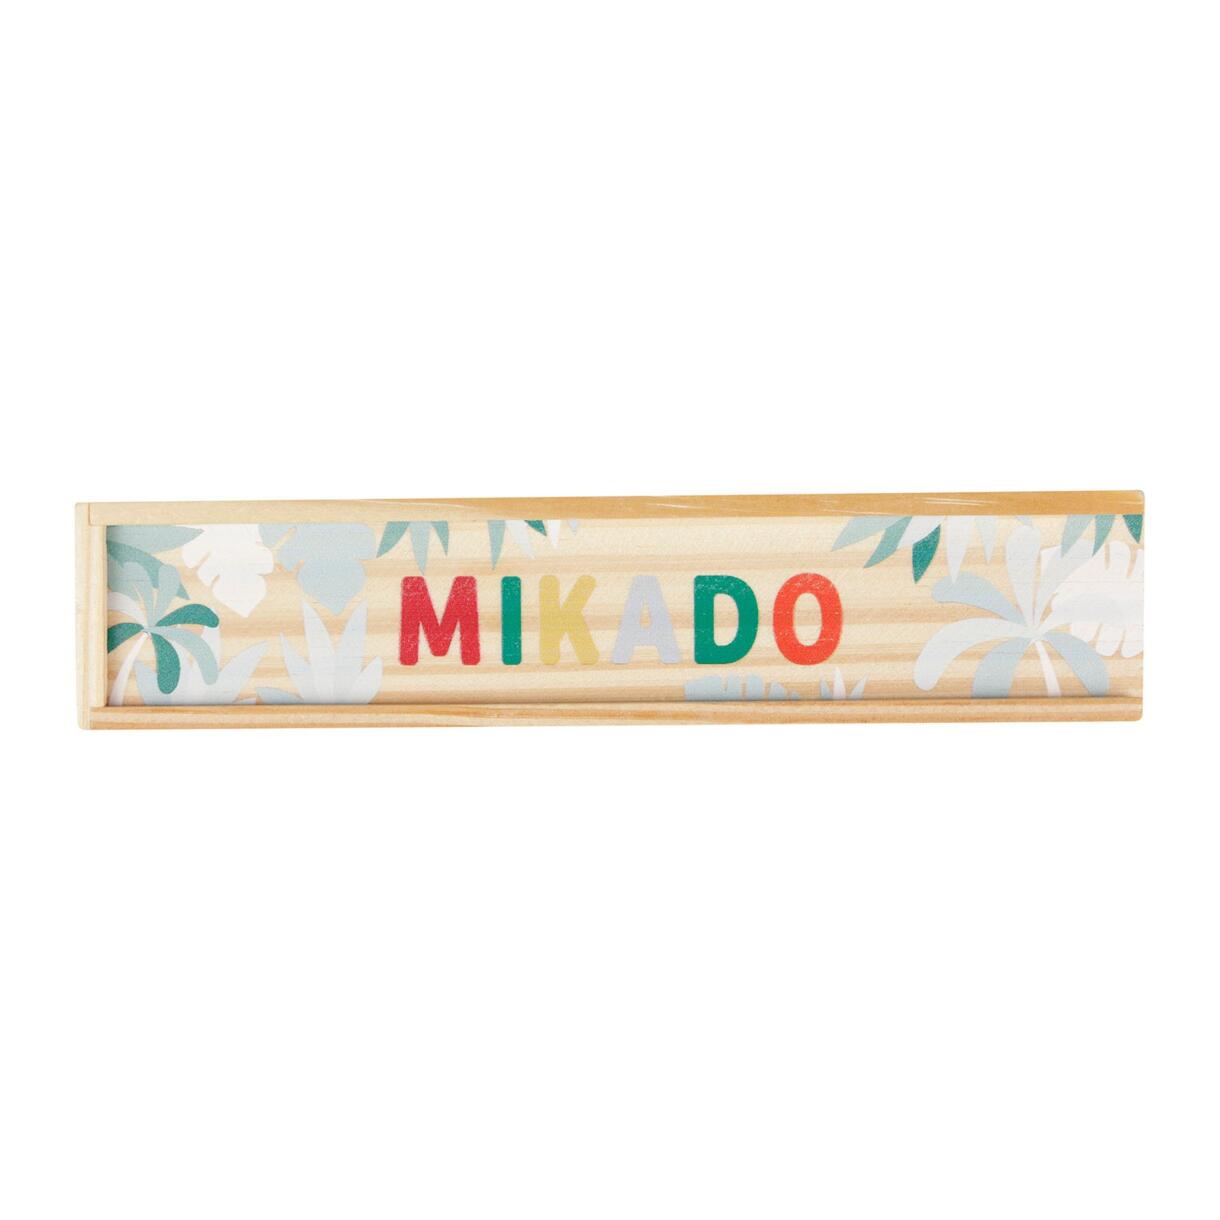 Mikado-Spiel Holz Mehrfarbig